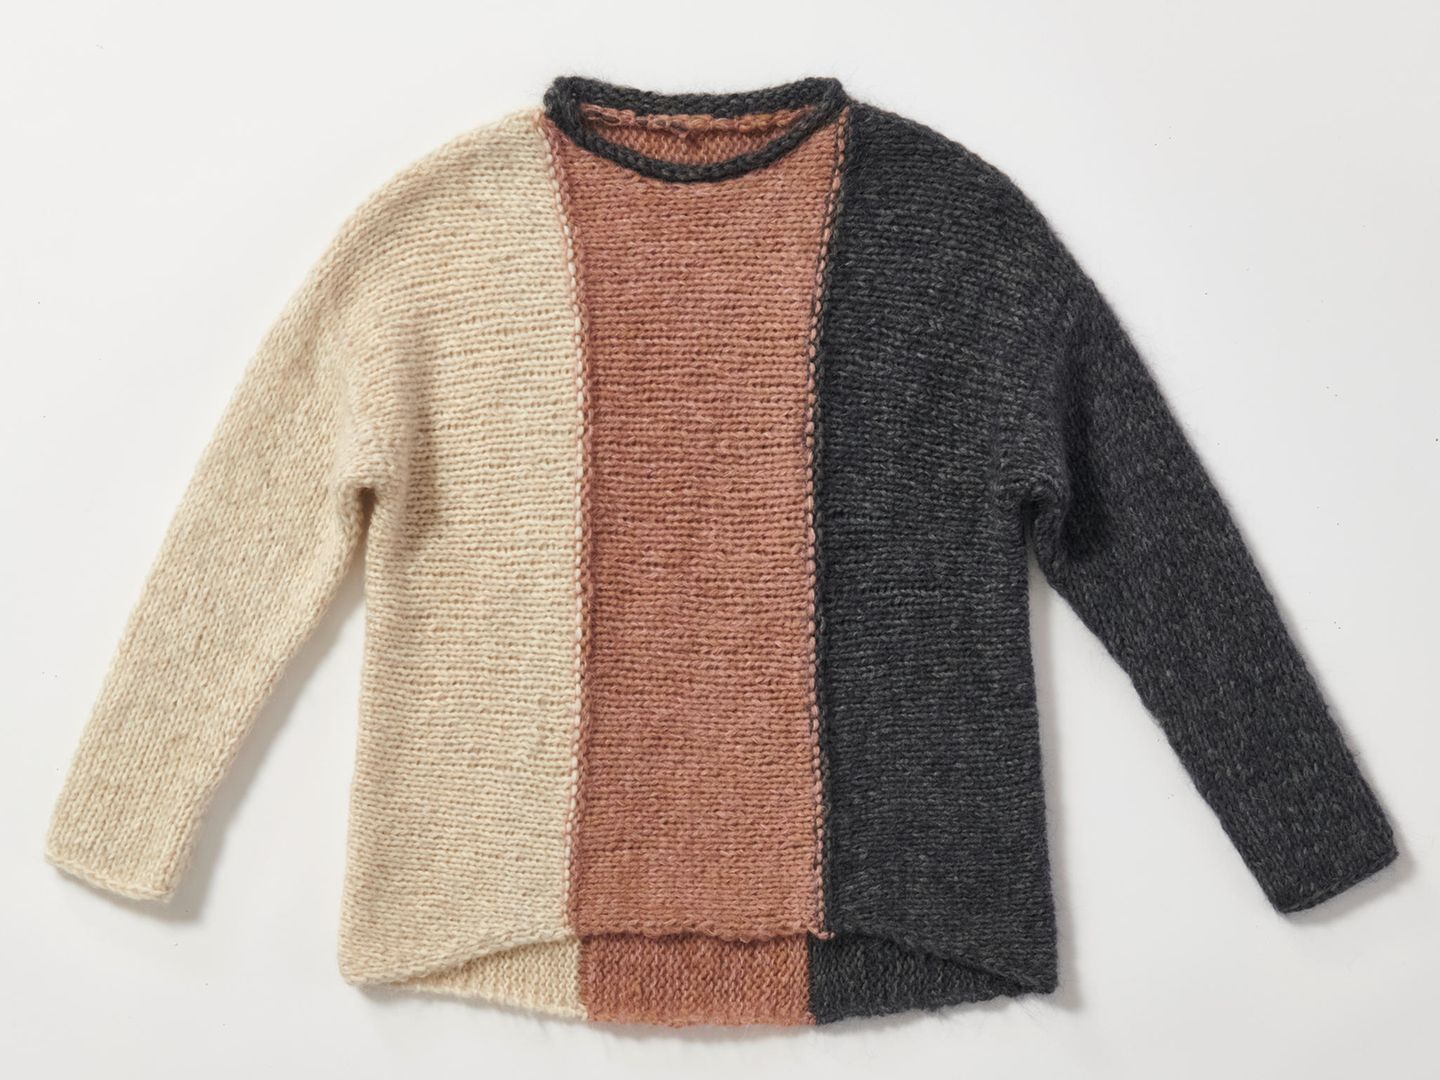 Quergestrickten Pullover dreifarbig stricken: Strickpullover mit drei Farben